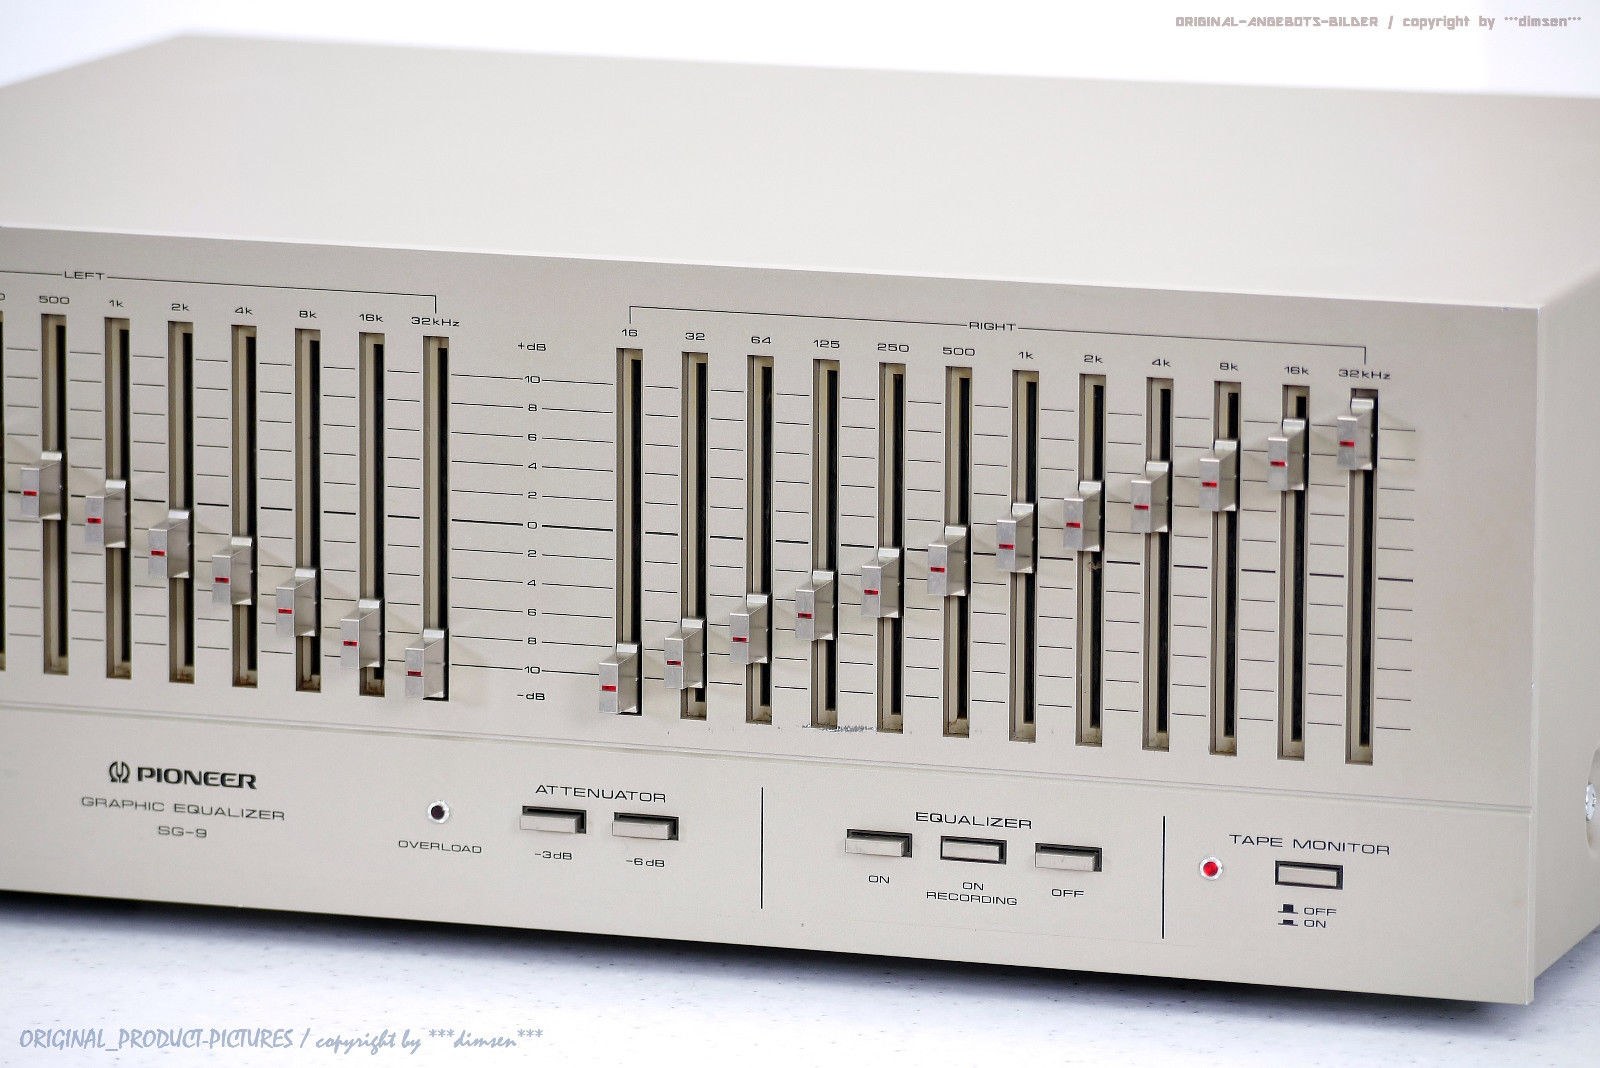 先锋 PIONEER SG-9500 图示均衡器（1978） – Lark Club